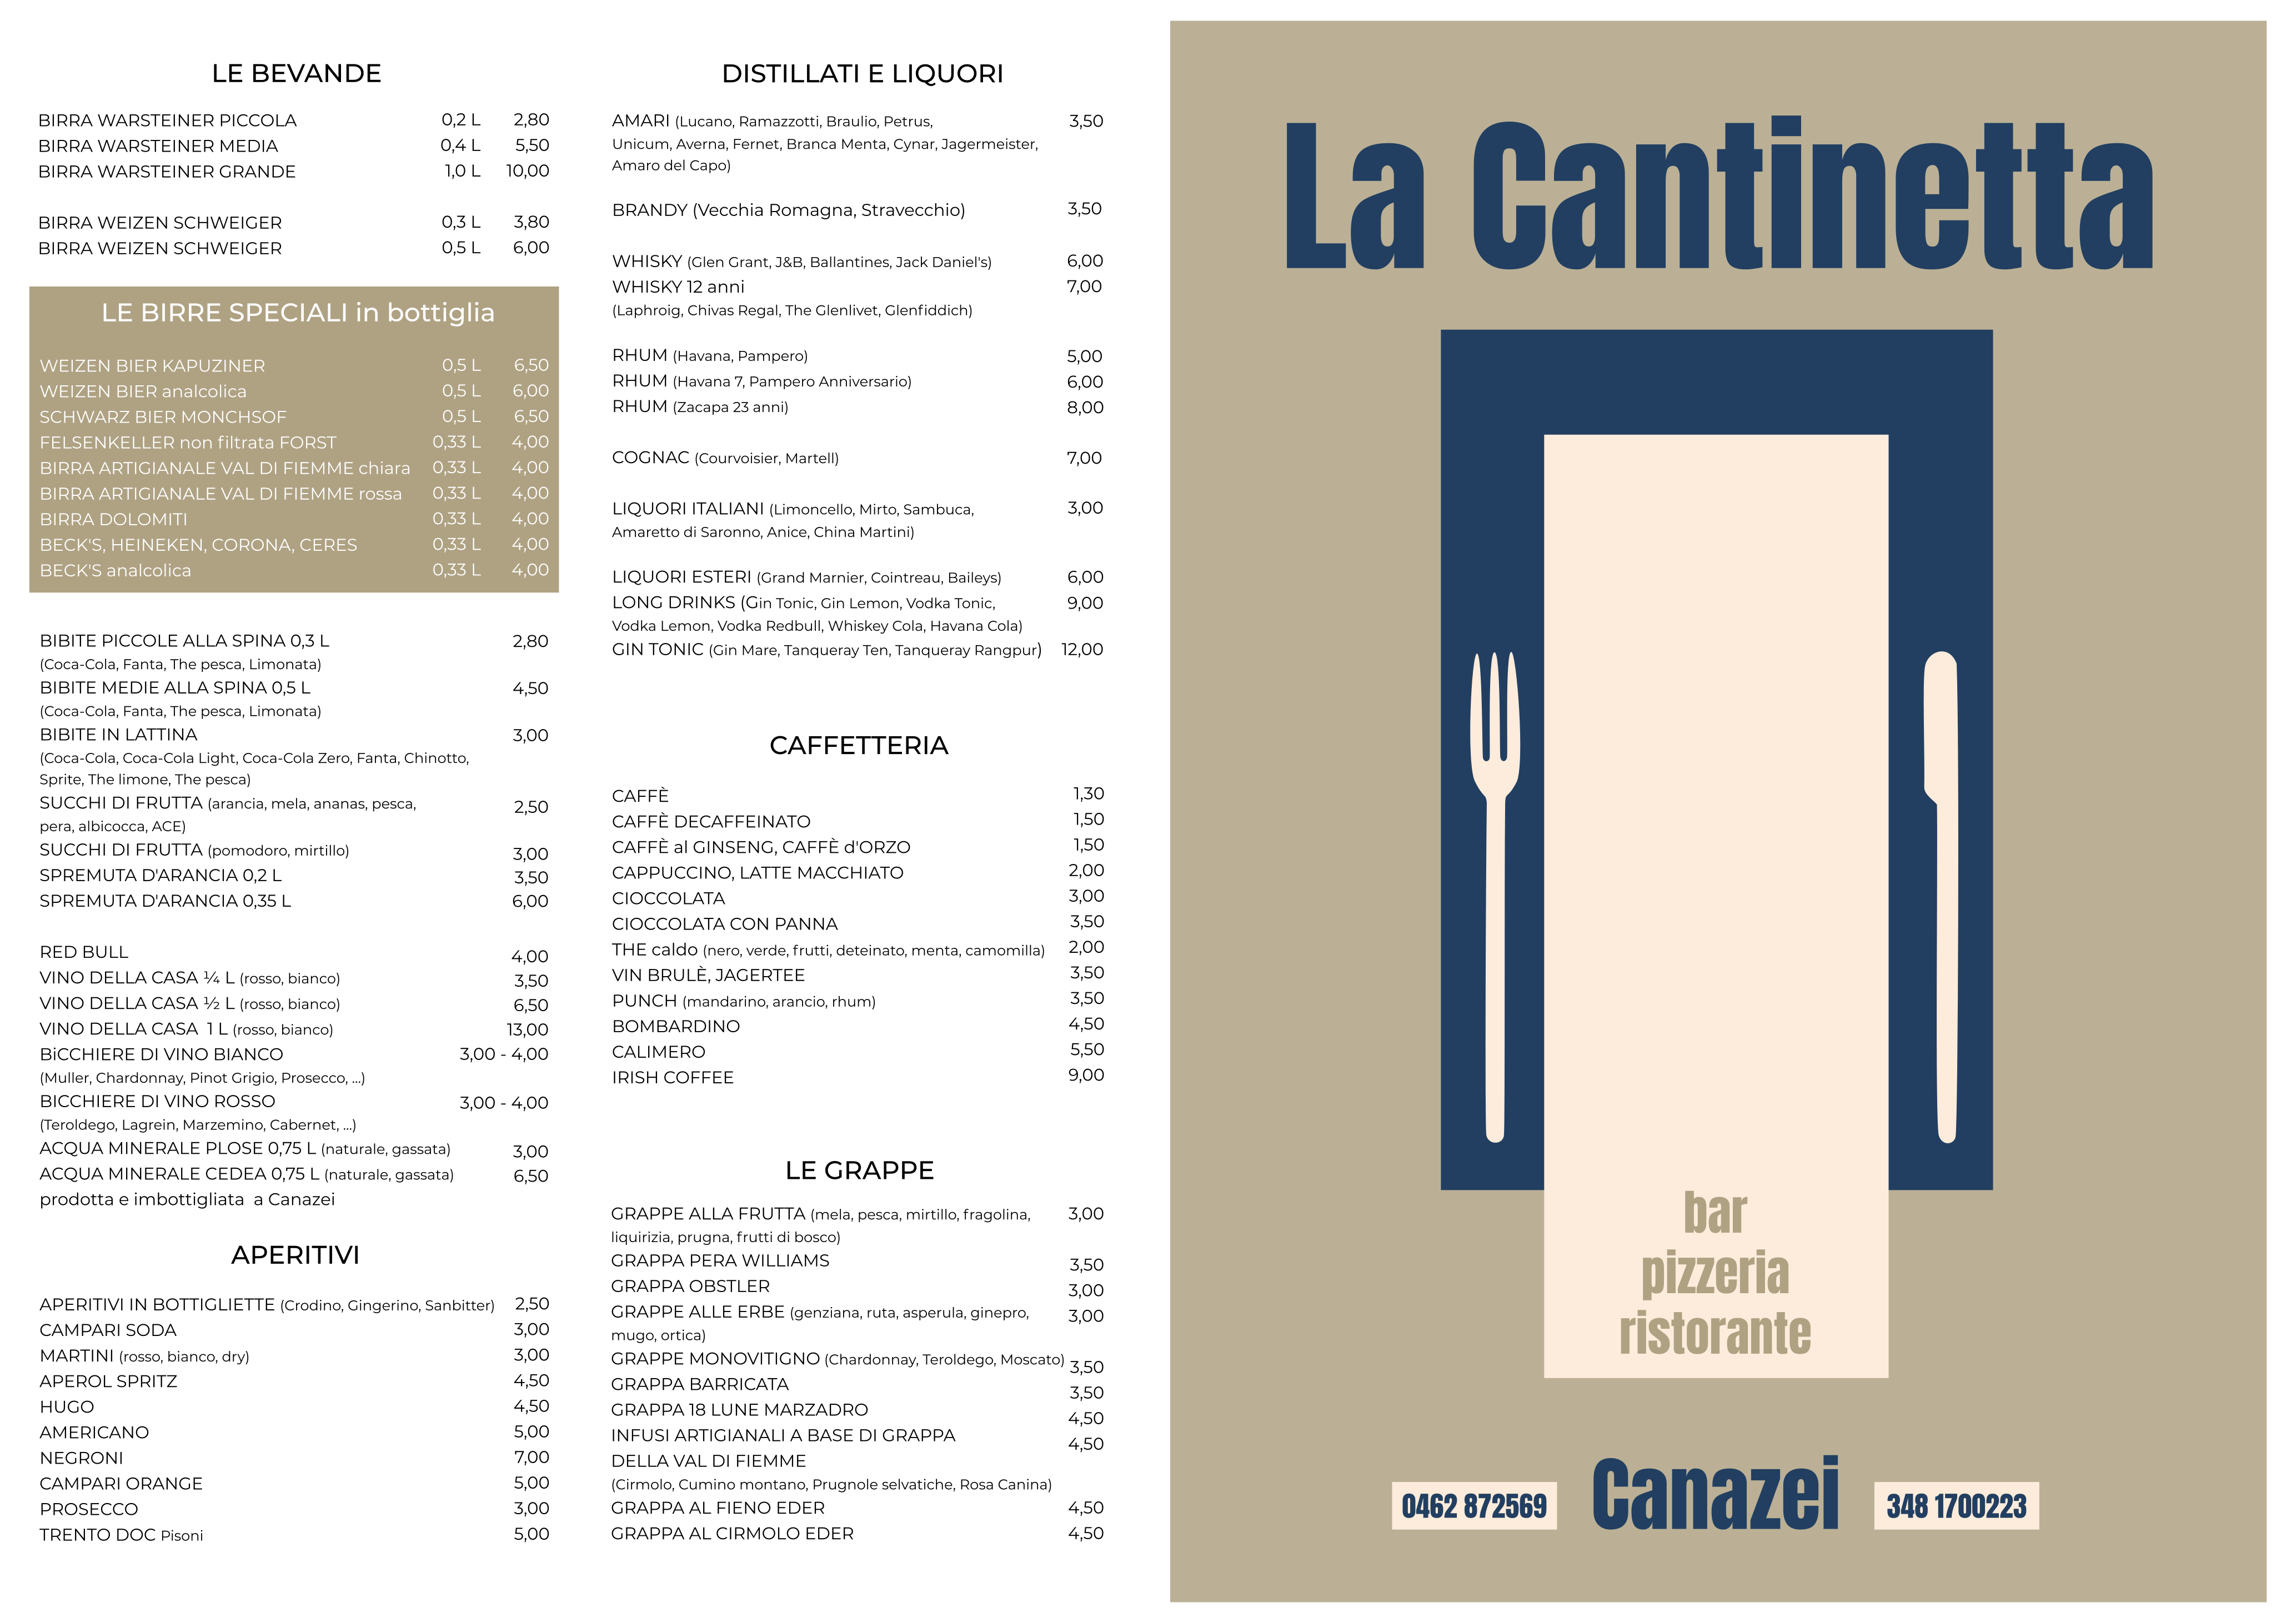 La Cantinetta menu italiano fronte